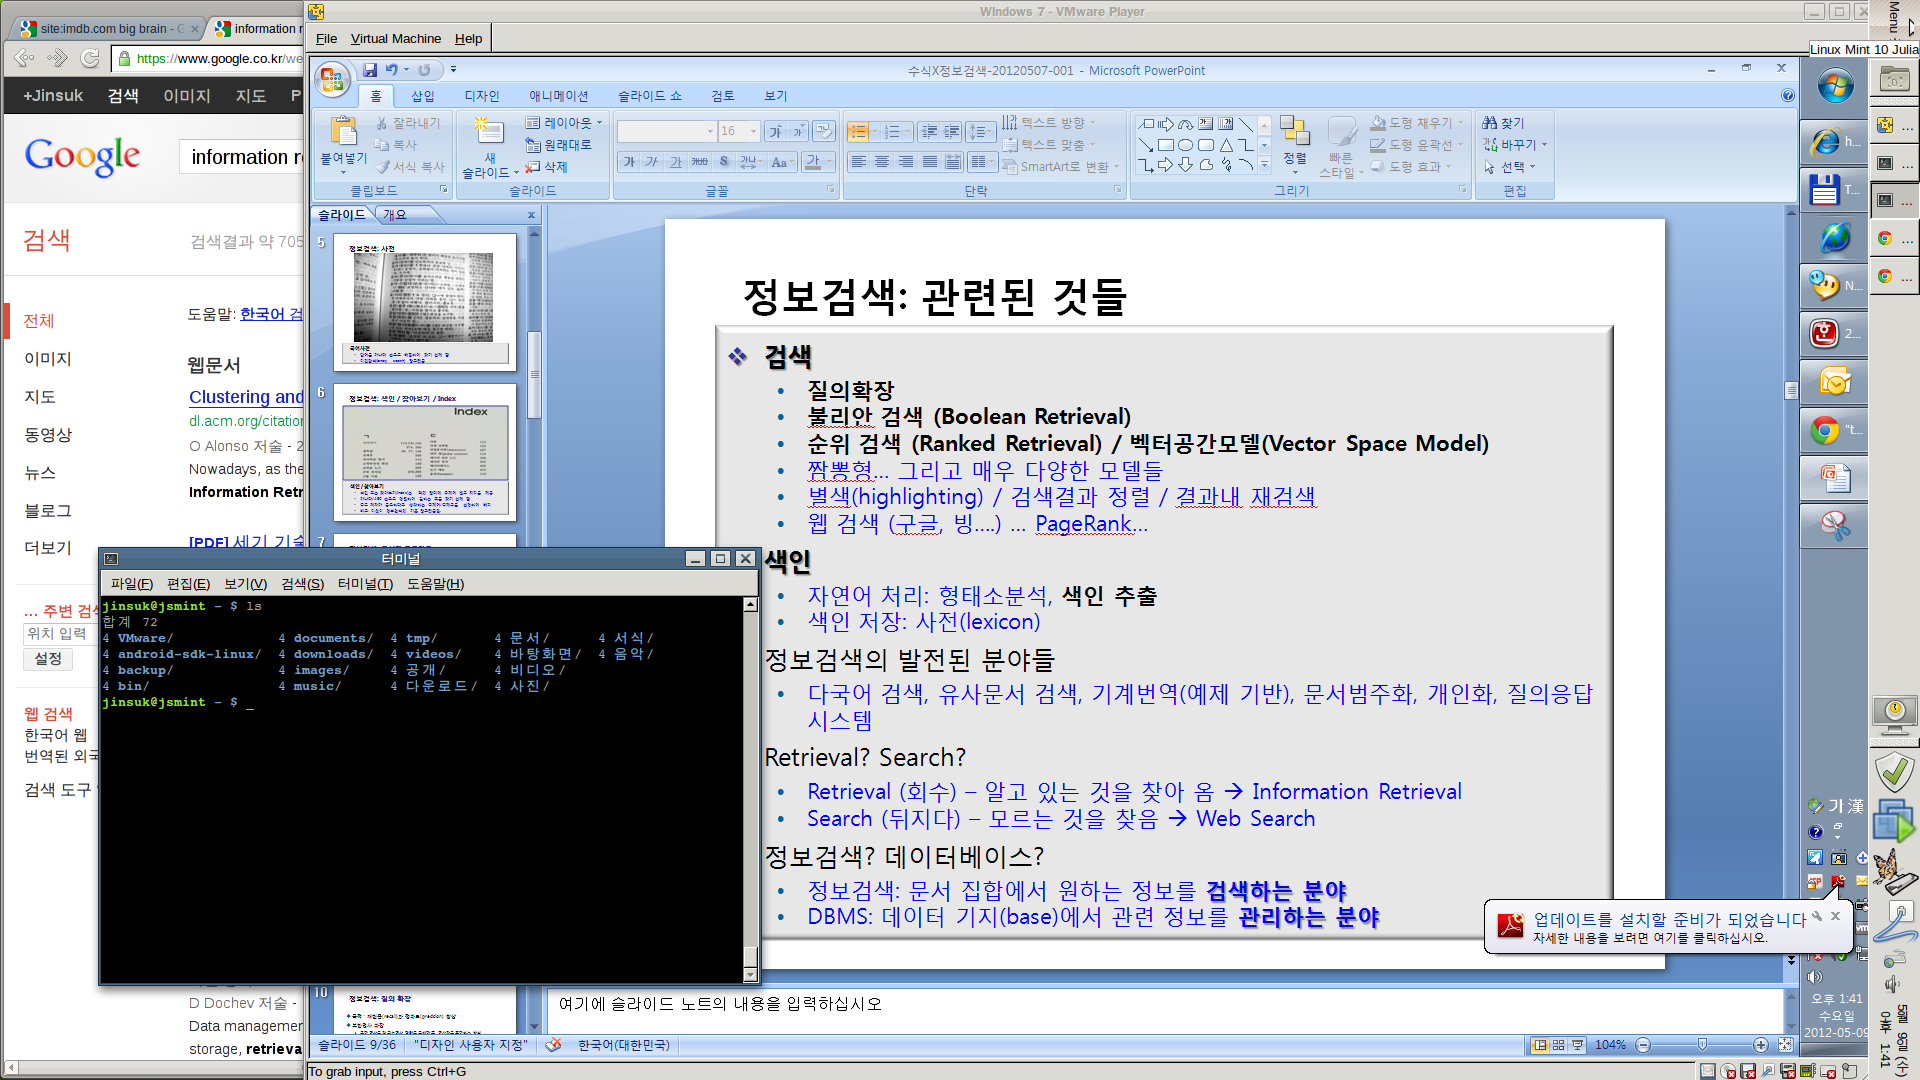 screenshot-jinsuk.png 요즘 내 PC의 설정